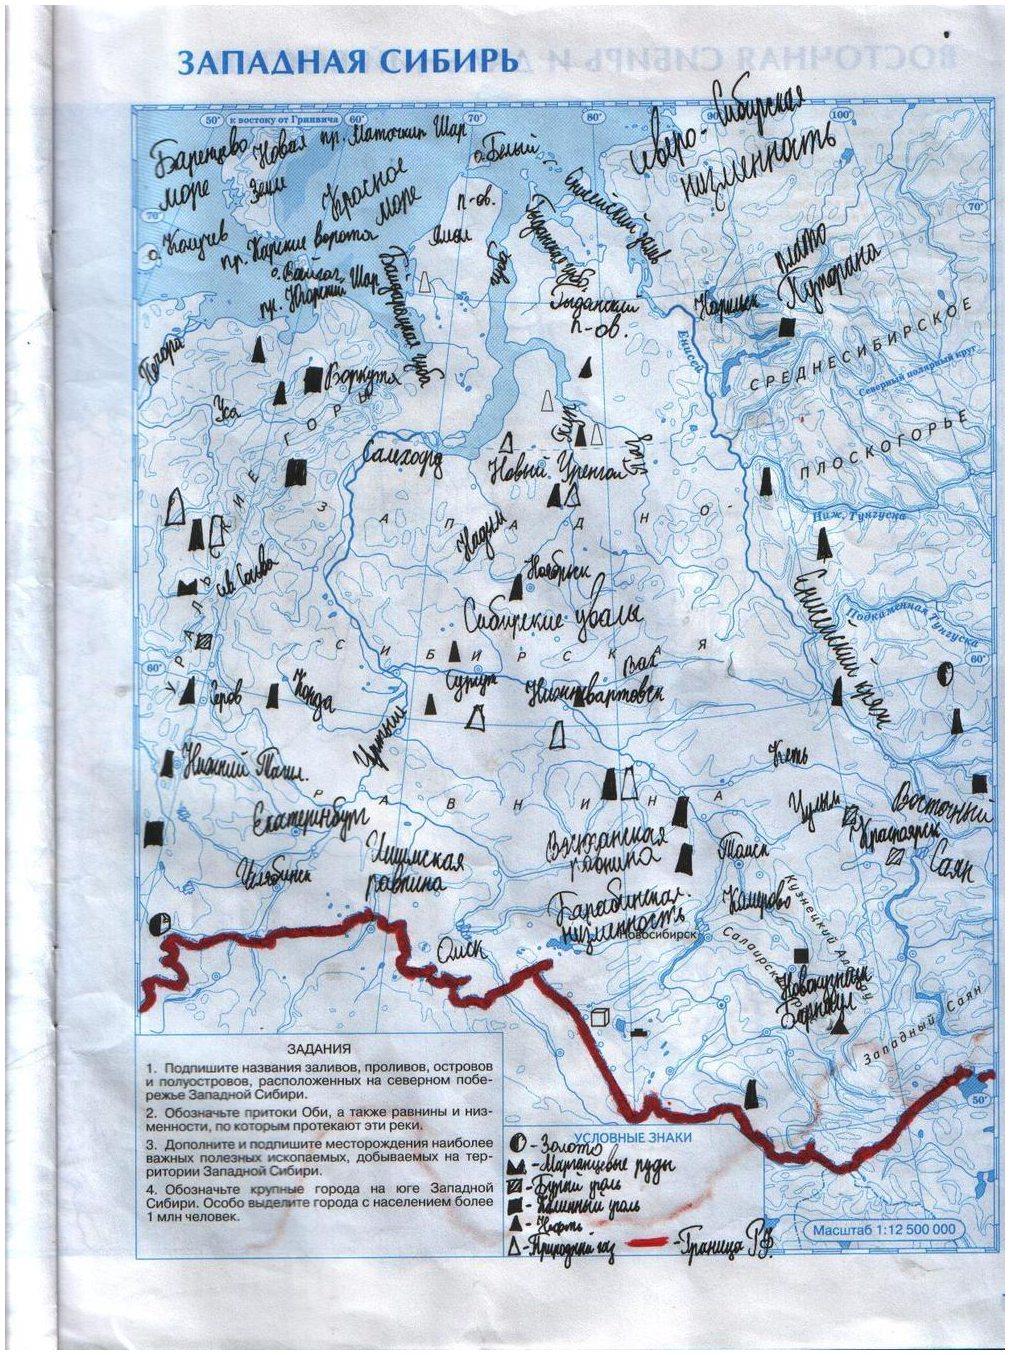 Контурная карта 8 класс стр 13. Контурная карта по географии 8 класс Западная Сибирь ответы. Контурная карта 8 класс Западная Сибирь ответы на задание. Восьмой класс контурные карты Западная Сибирь страница 13.